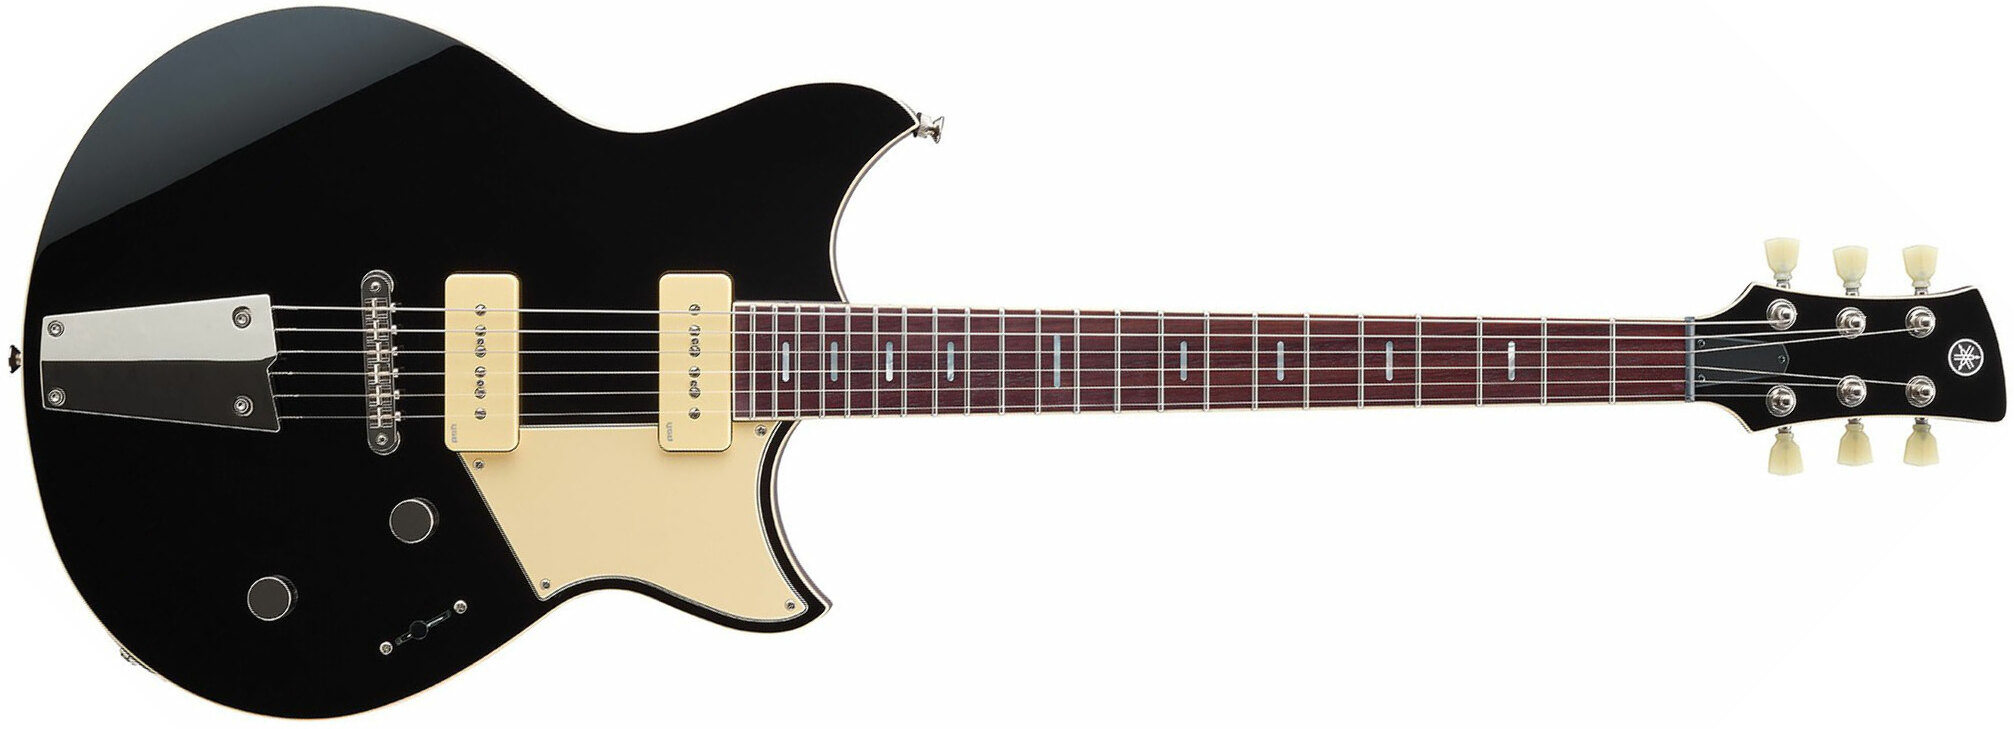 Yamaha Rss02t Revstar Standard 2p90 Ht Rw - Black - Guitarra eléctrica de doble corte. - Main picture